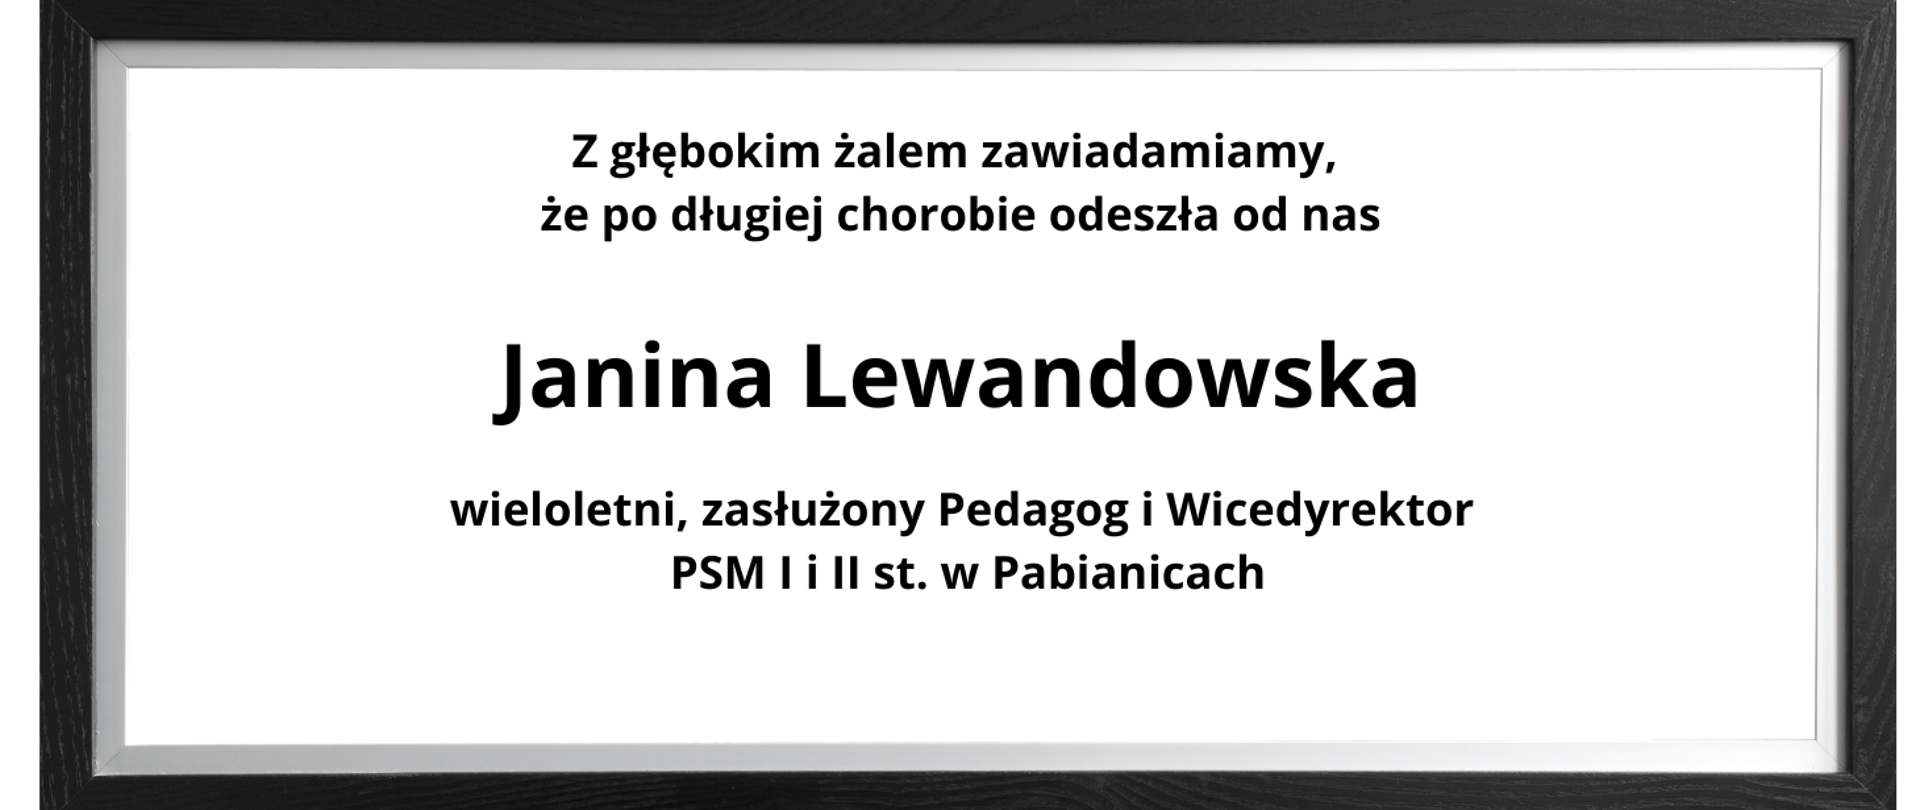 Czarna ramka, białe tło. Tekst czarną czcionką :Z głębokim żalem zawiadamiamy, że odeszła od nas Janina Lewandowska, wieloletni zasłużony pedagog i wicedyrektor PSM I i II st. w Pabianicach.